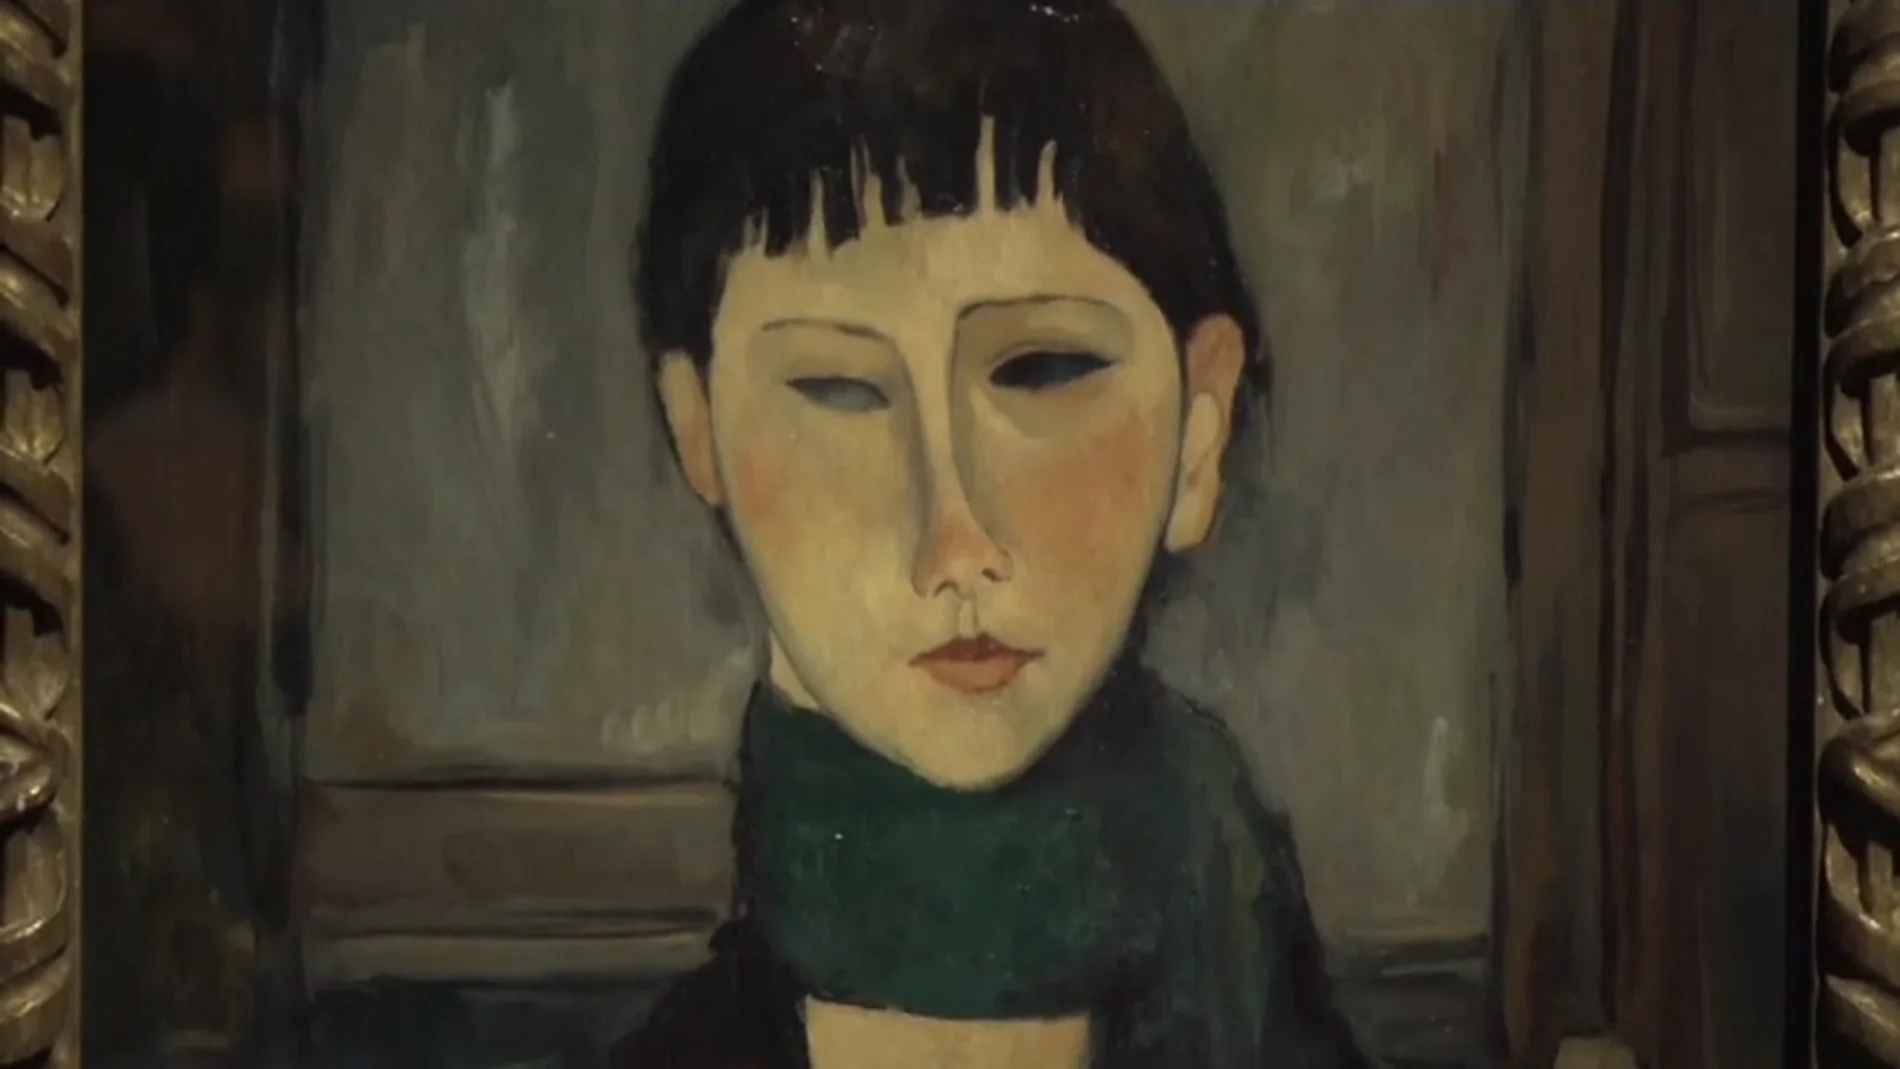 Peritos confirman que la exposición de Modigliani en Génova estaba repleta de cuadros falsos